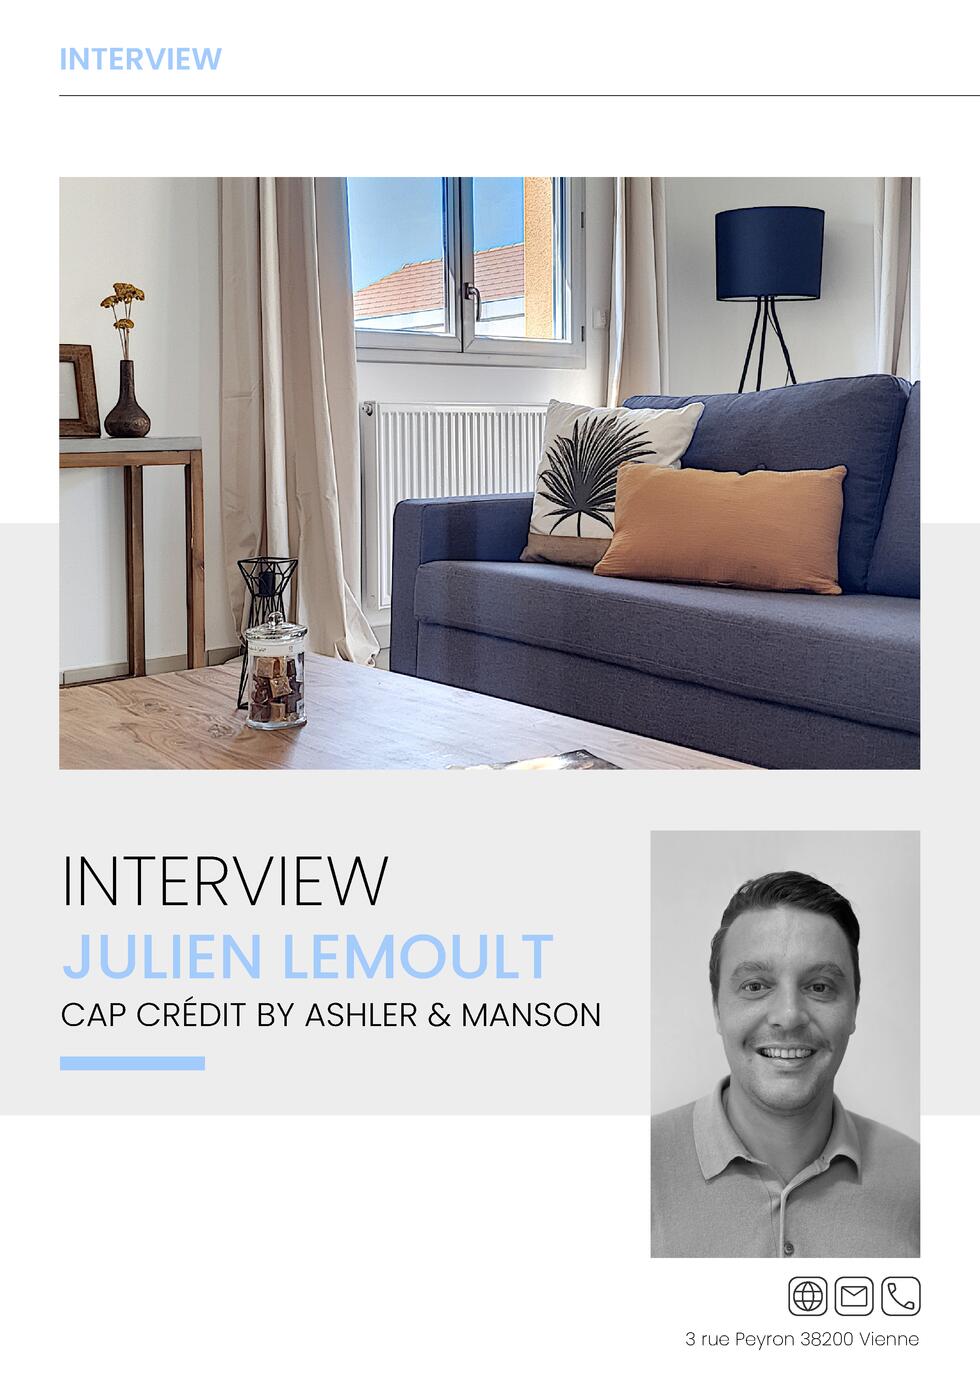 INTERVIEW  INTERVIEW Bonjour Julien, pouvez-vous vous pr  senter         Julien Lemoult, j   ai 36 ans, mari   et je suis ...